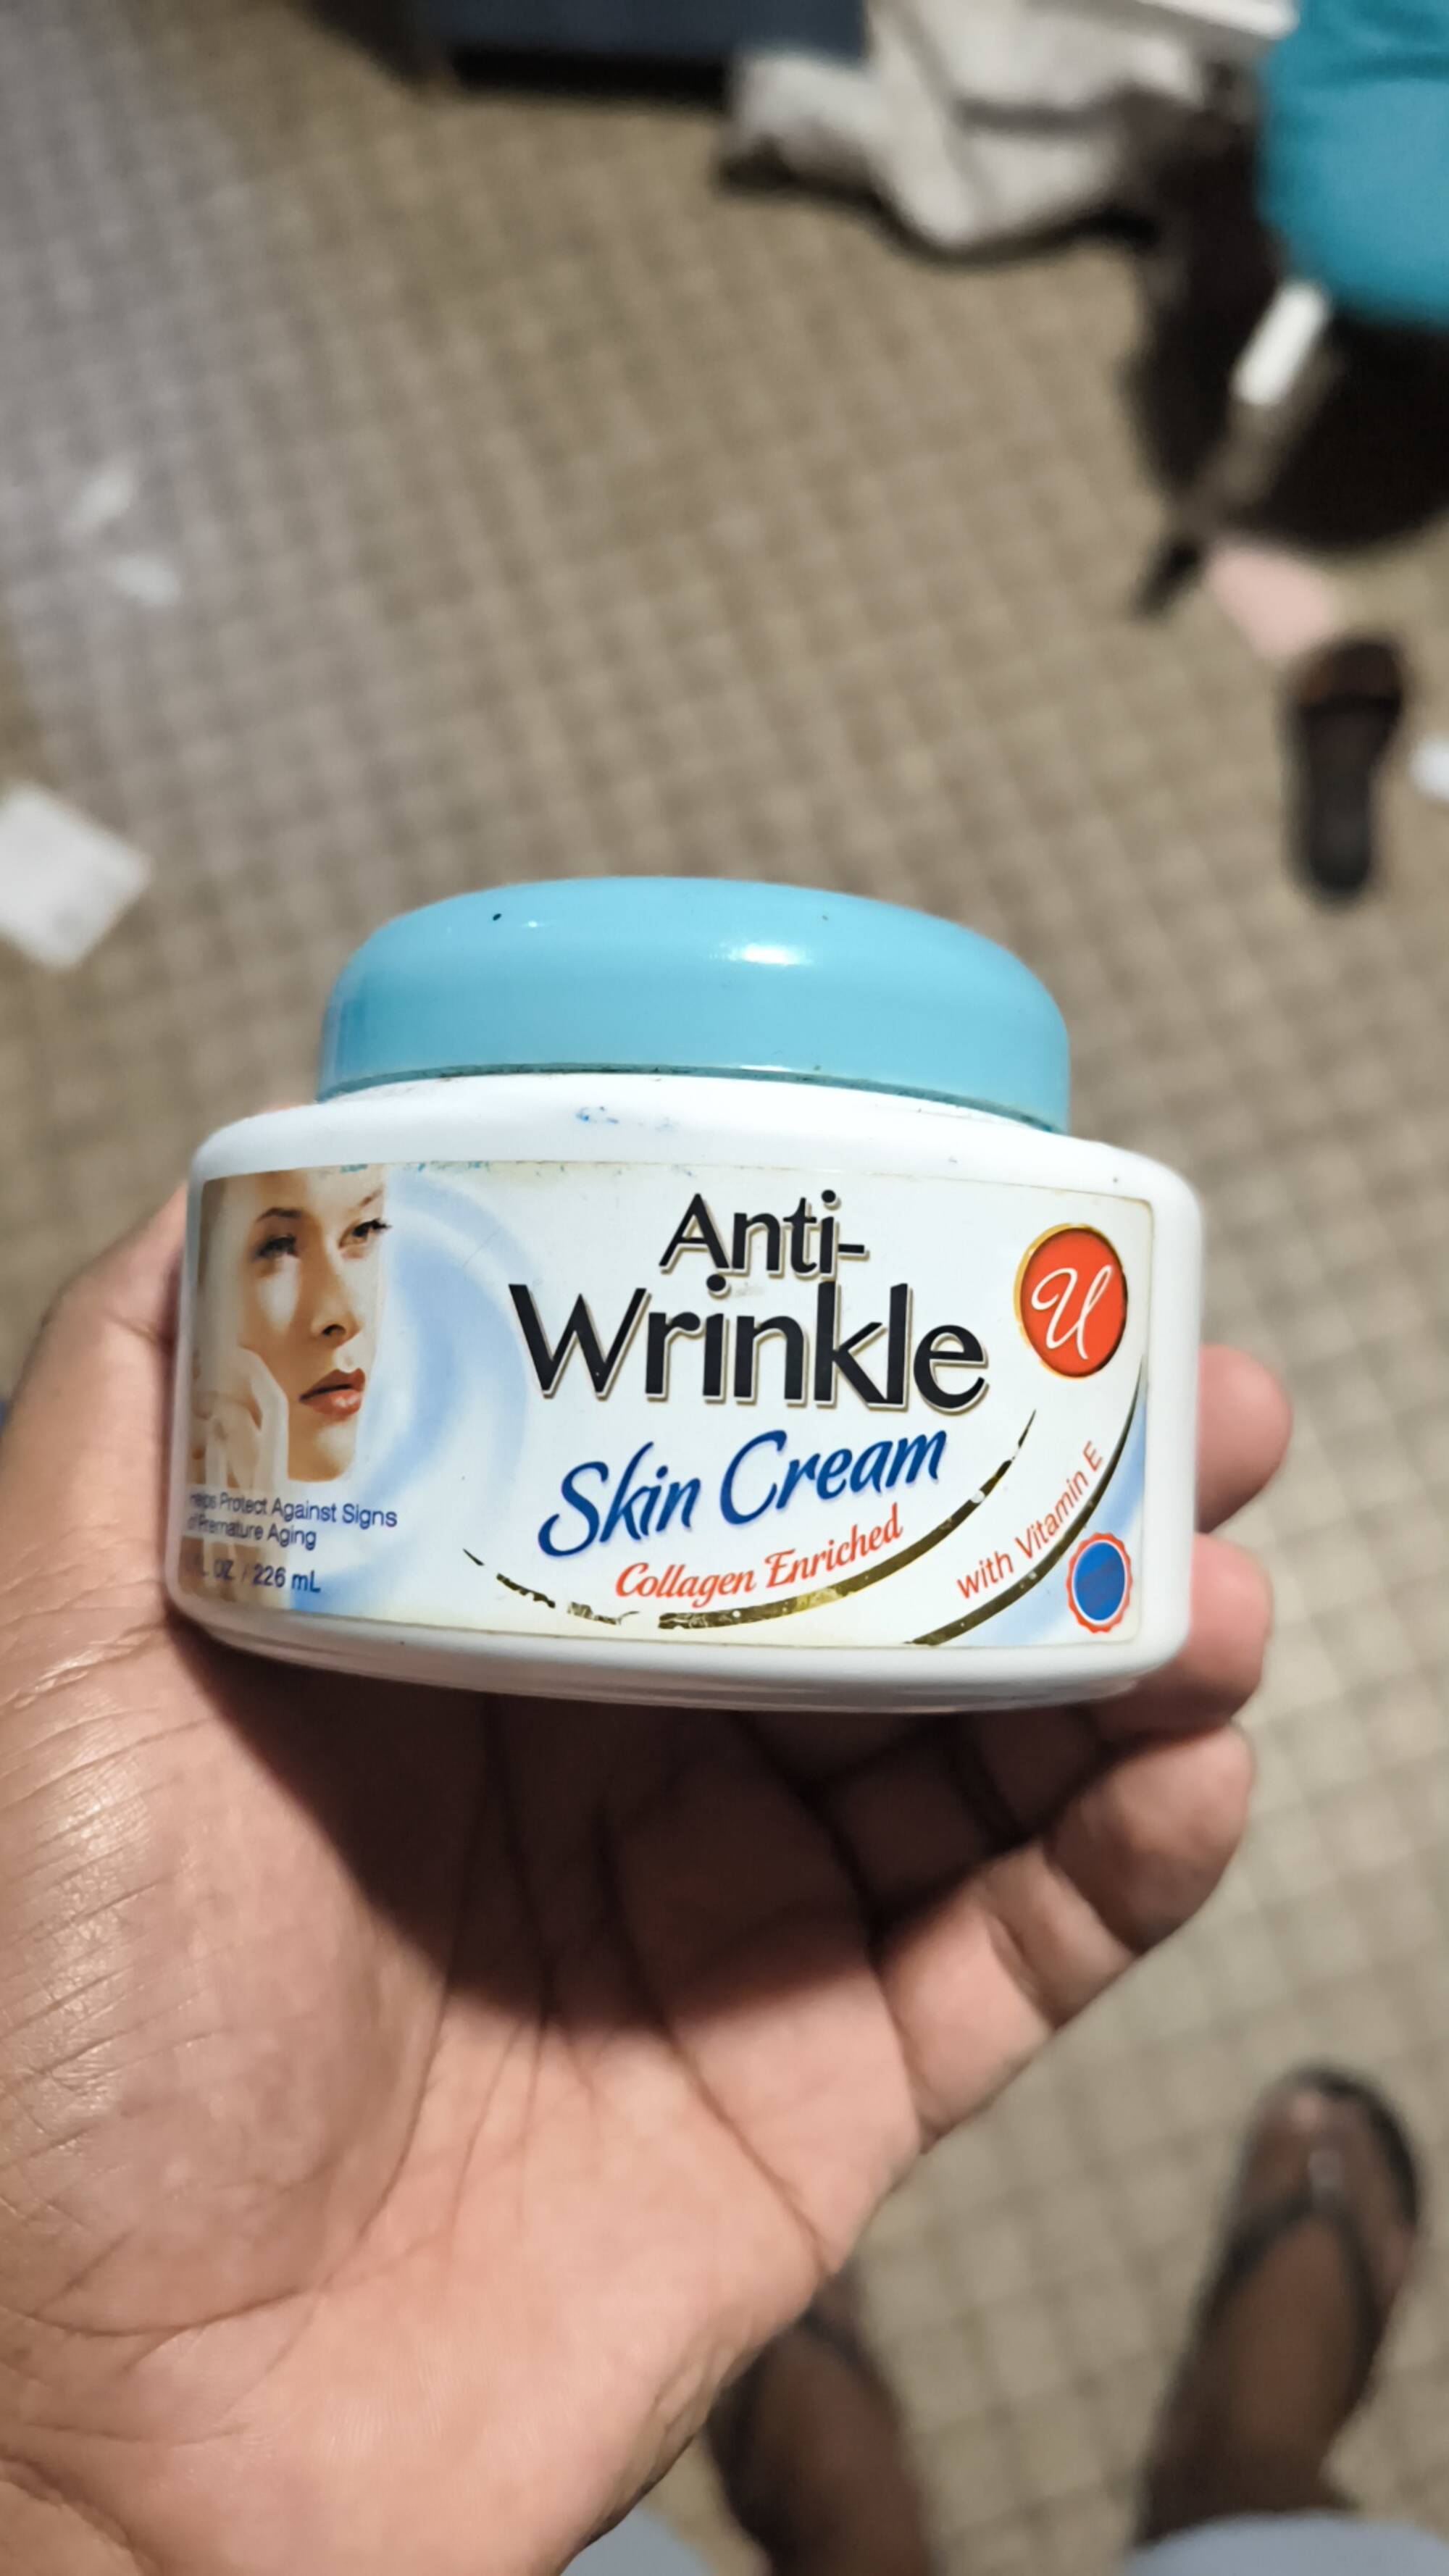 U - Anti-wrinkle skin cream with vitamin E